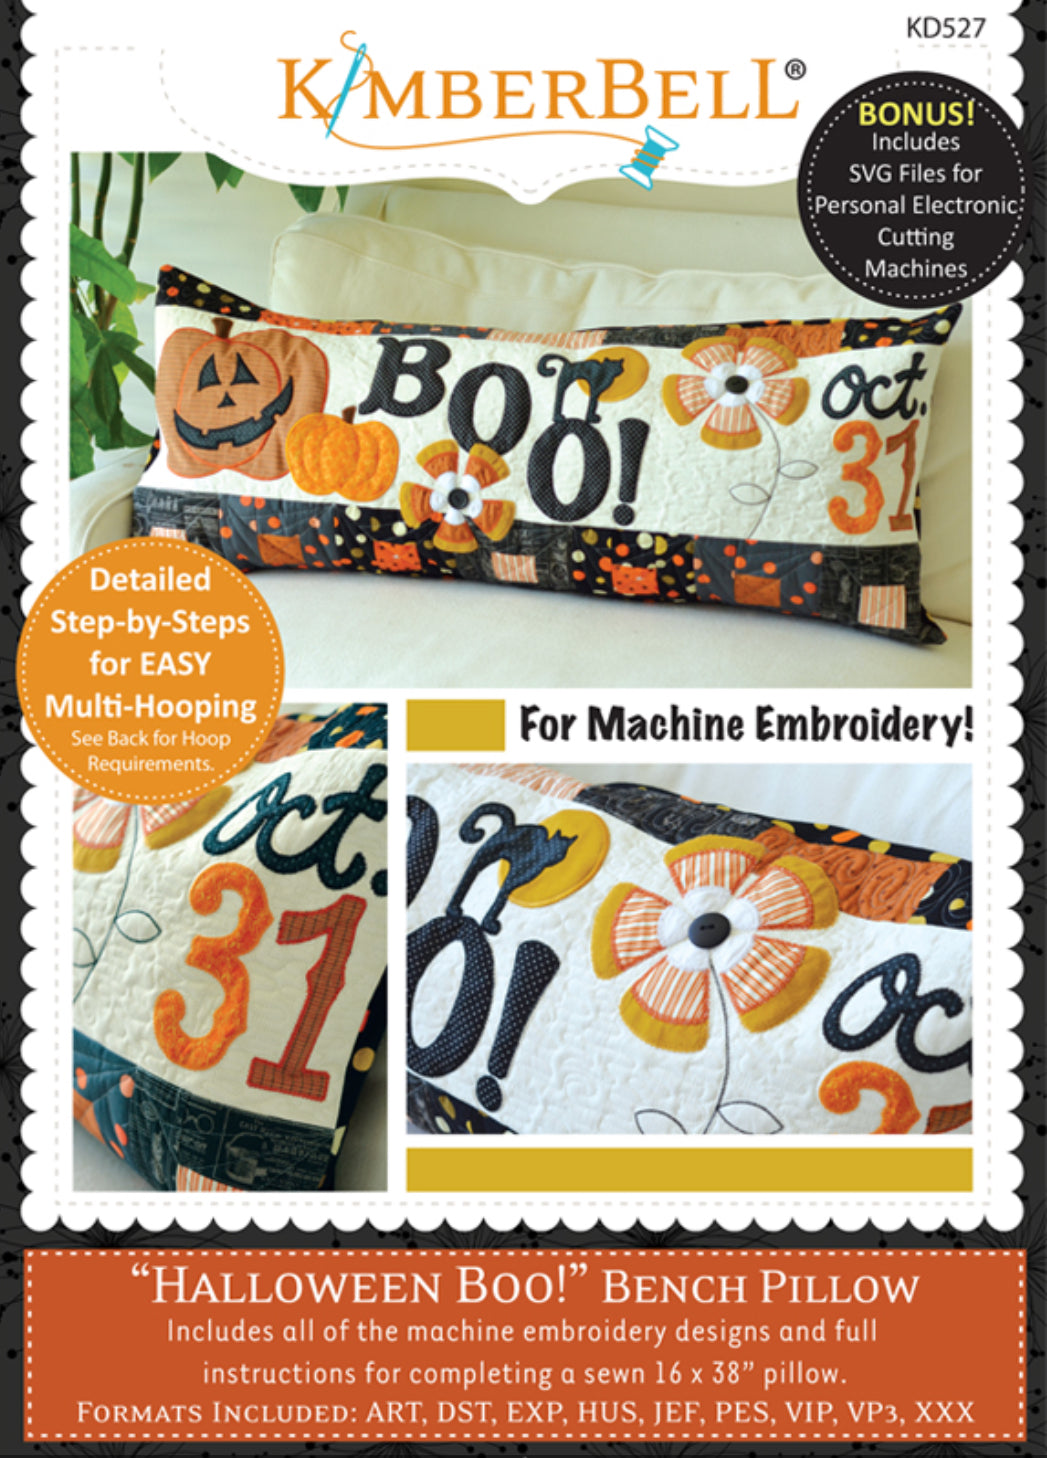 Halloween Boo! Bench Pillow - KimberBell